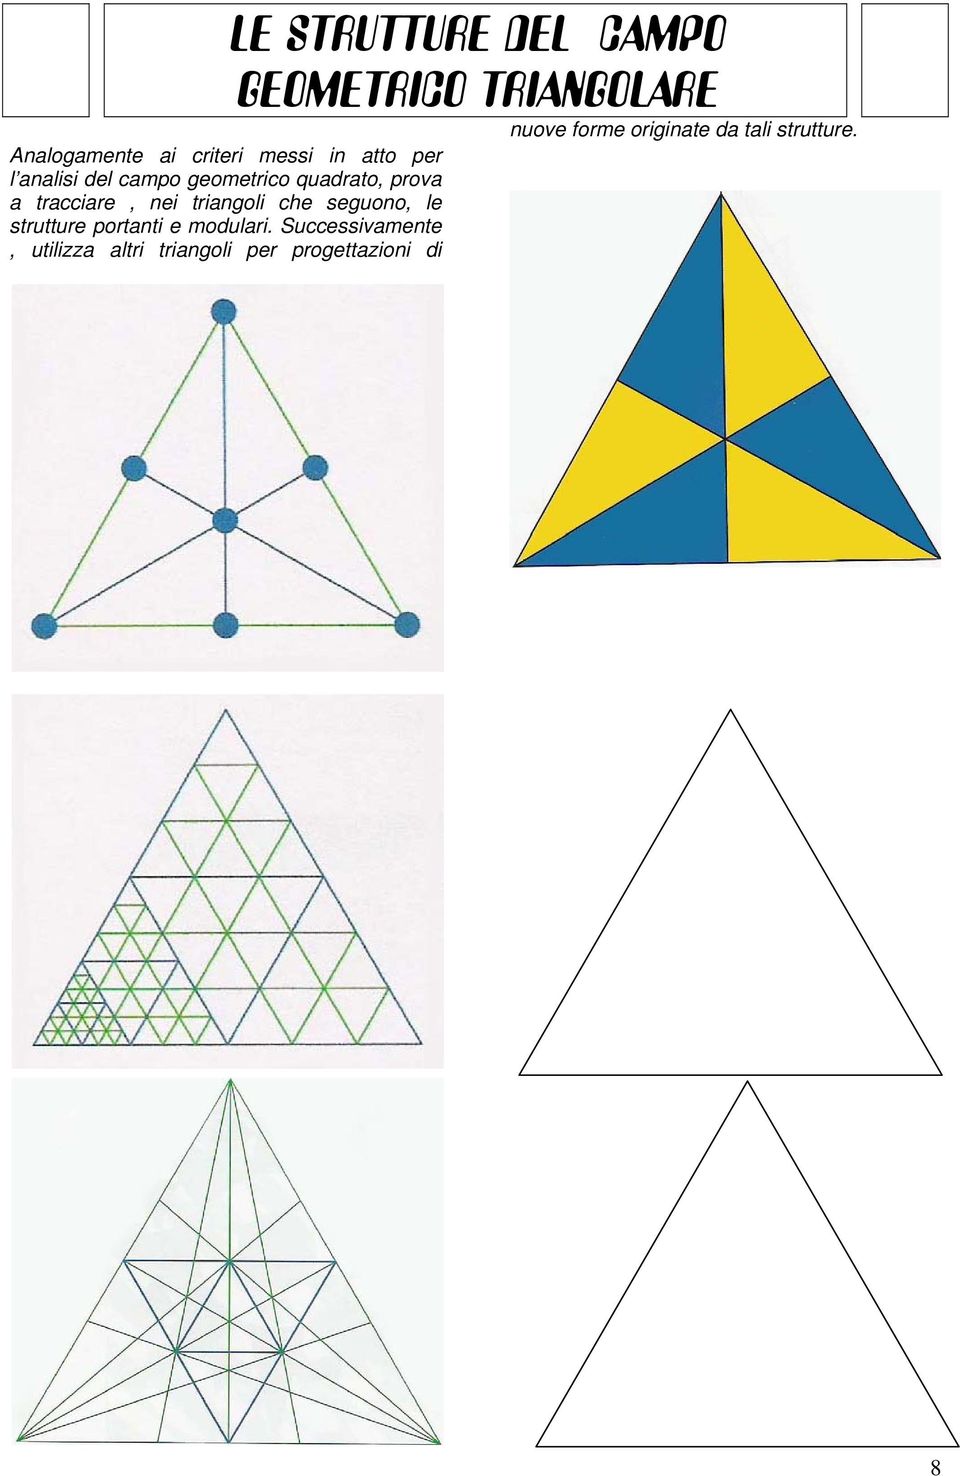 triangoli che seguono, le strutture portanti e modulari.